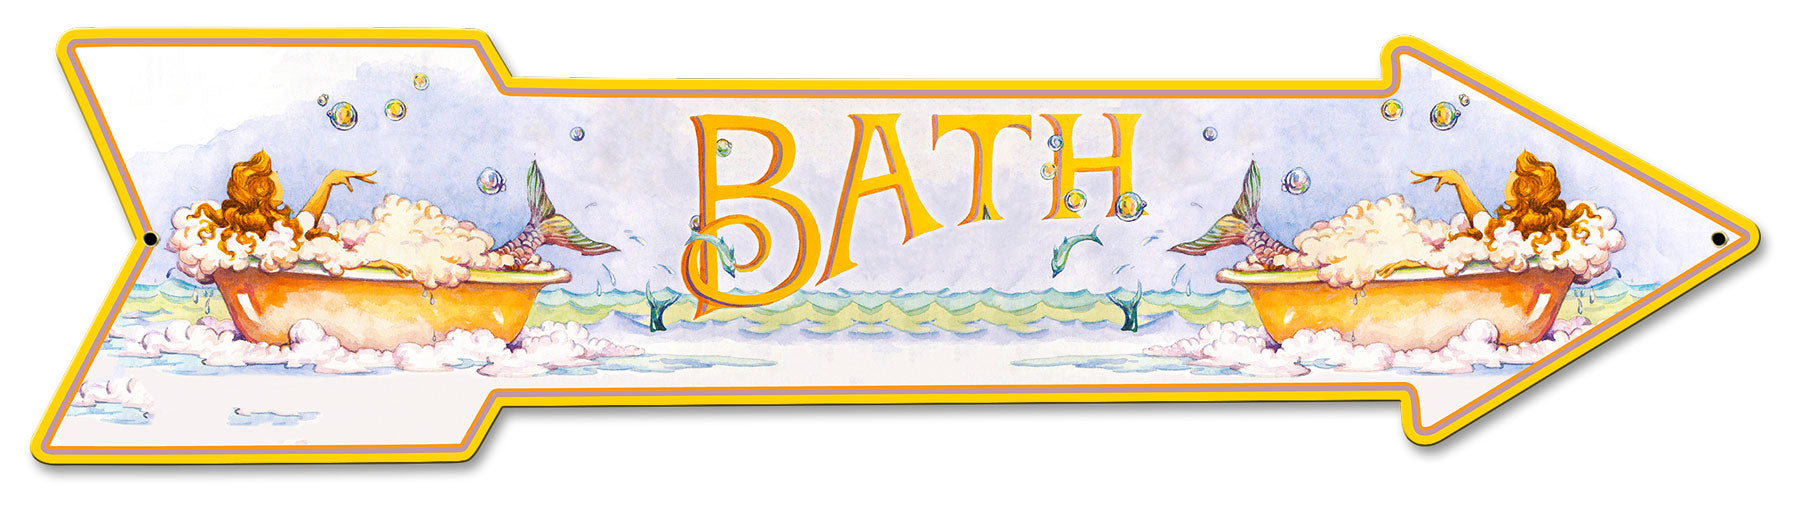 Mermaid Bath Arrow Vintage Sign